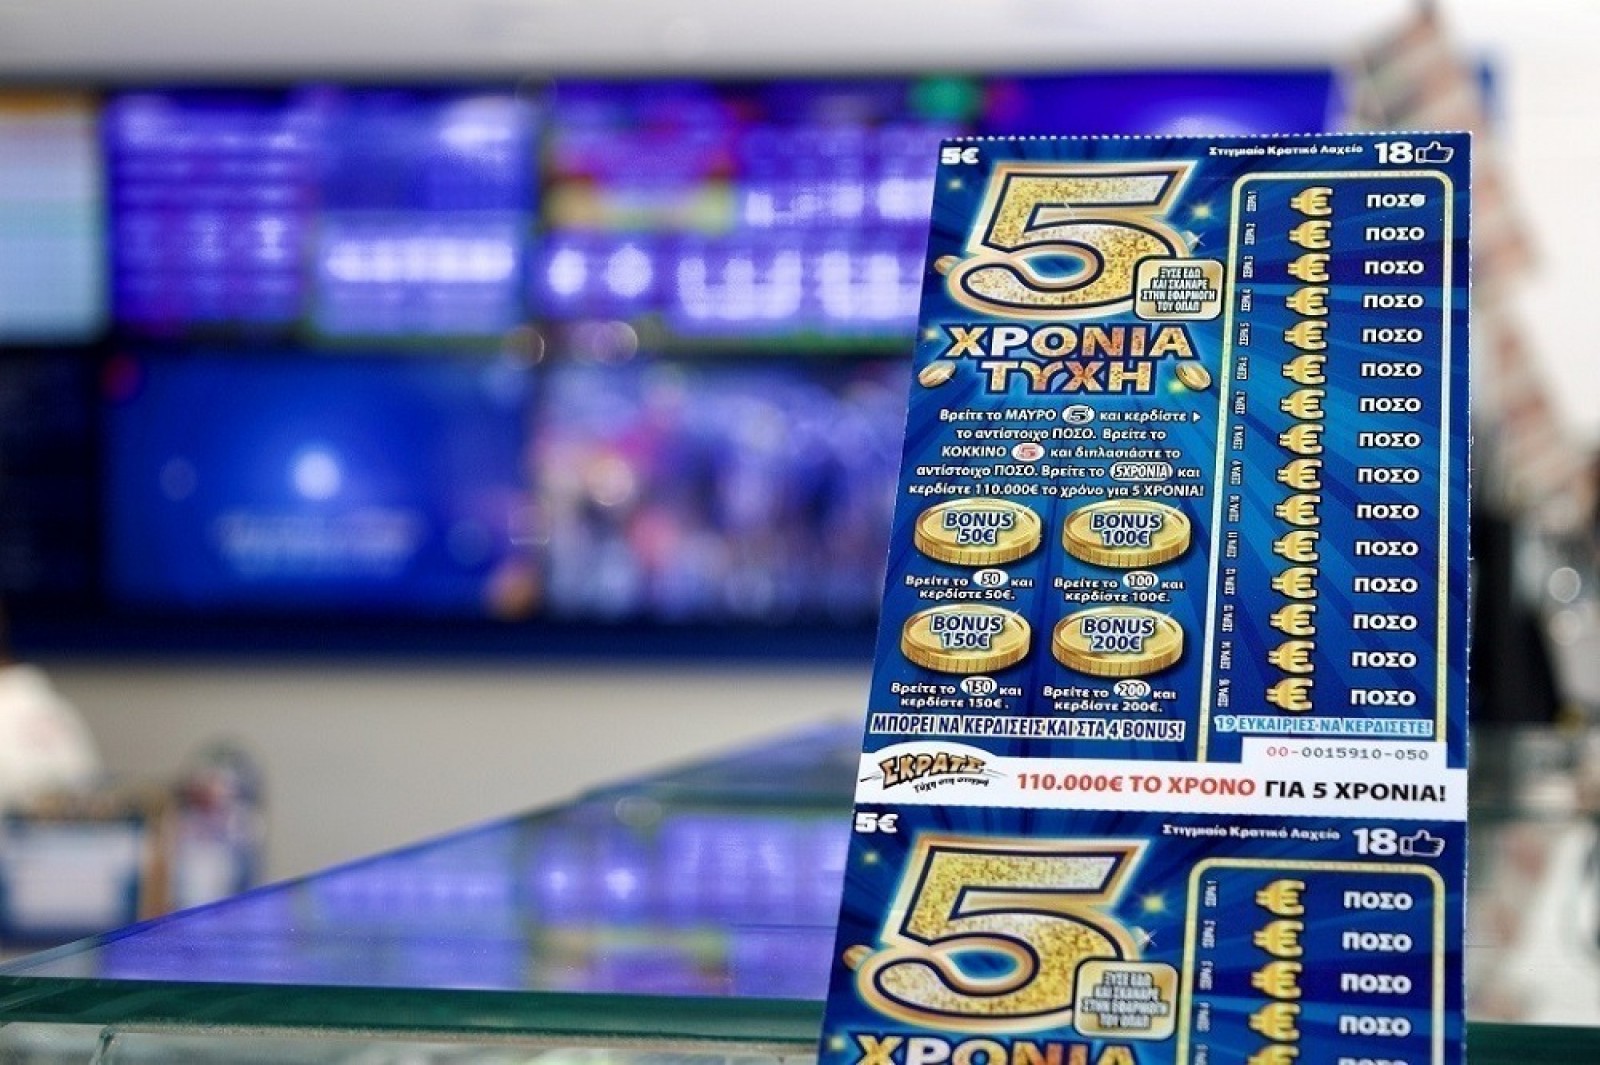 Μαγνησία: Εθισμένος 18χρονος λήστεψε πρακτορείο τυχερών παιχνιδιών και έπαιξε τα λεφτά… σε άλλο πρακτορείο